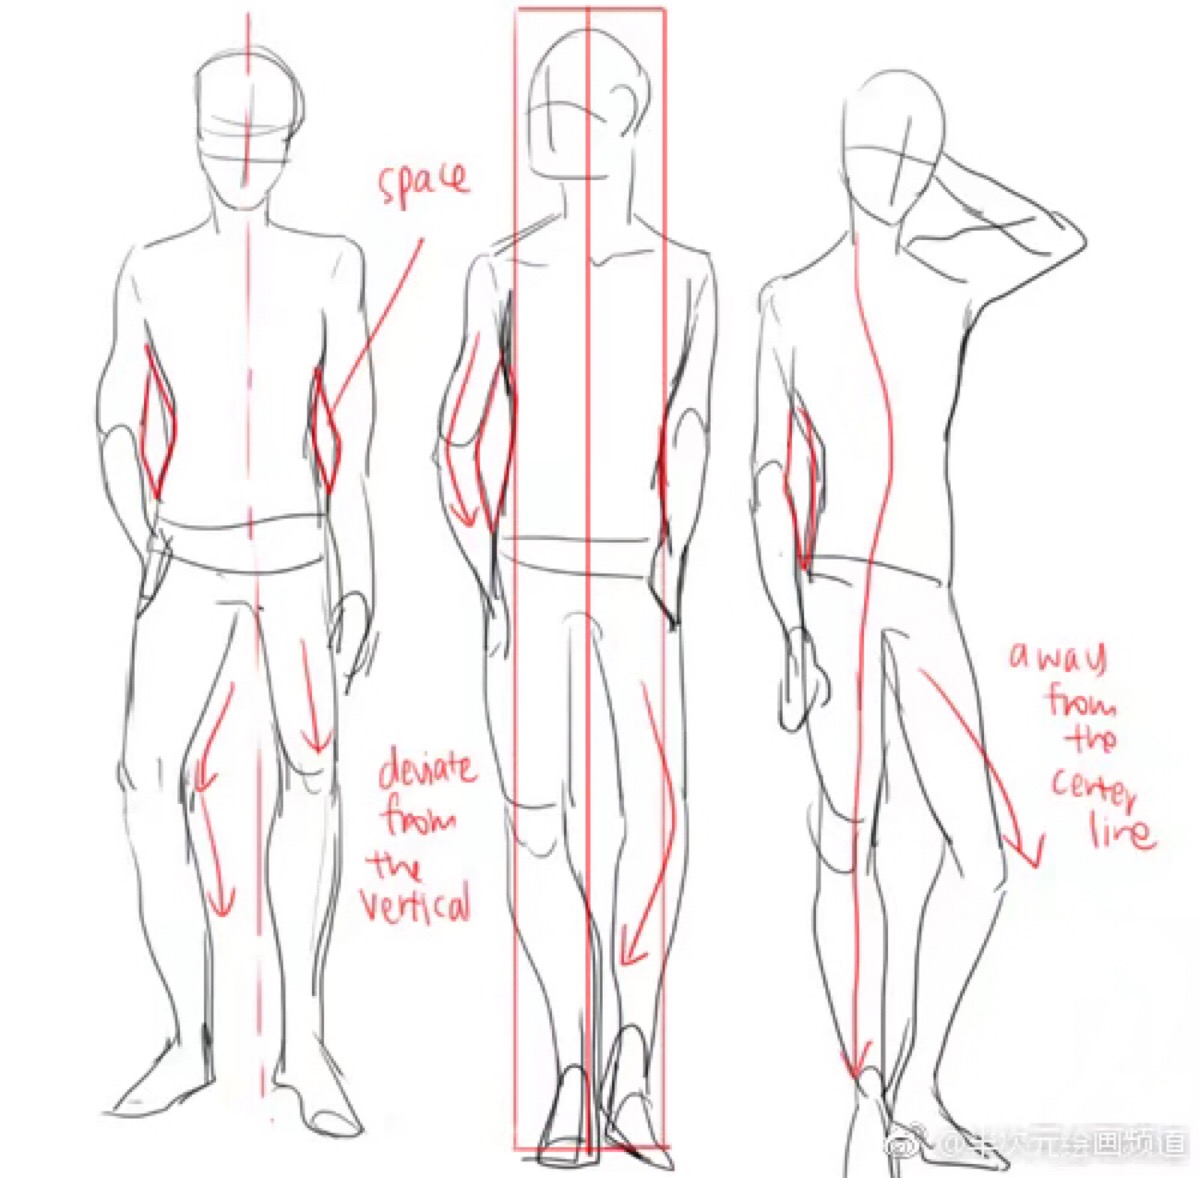 kelps的男性腿部&人体绘制,画腿部时要记得肌肉线条看上去会更自然